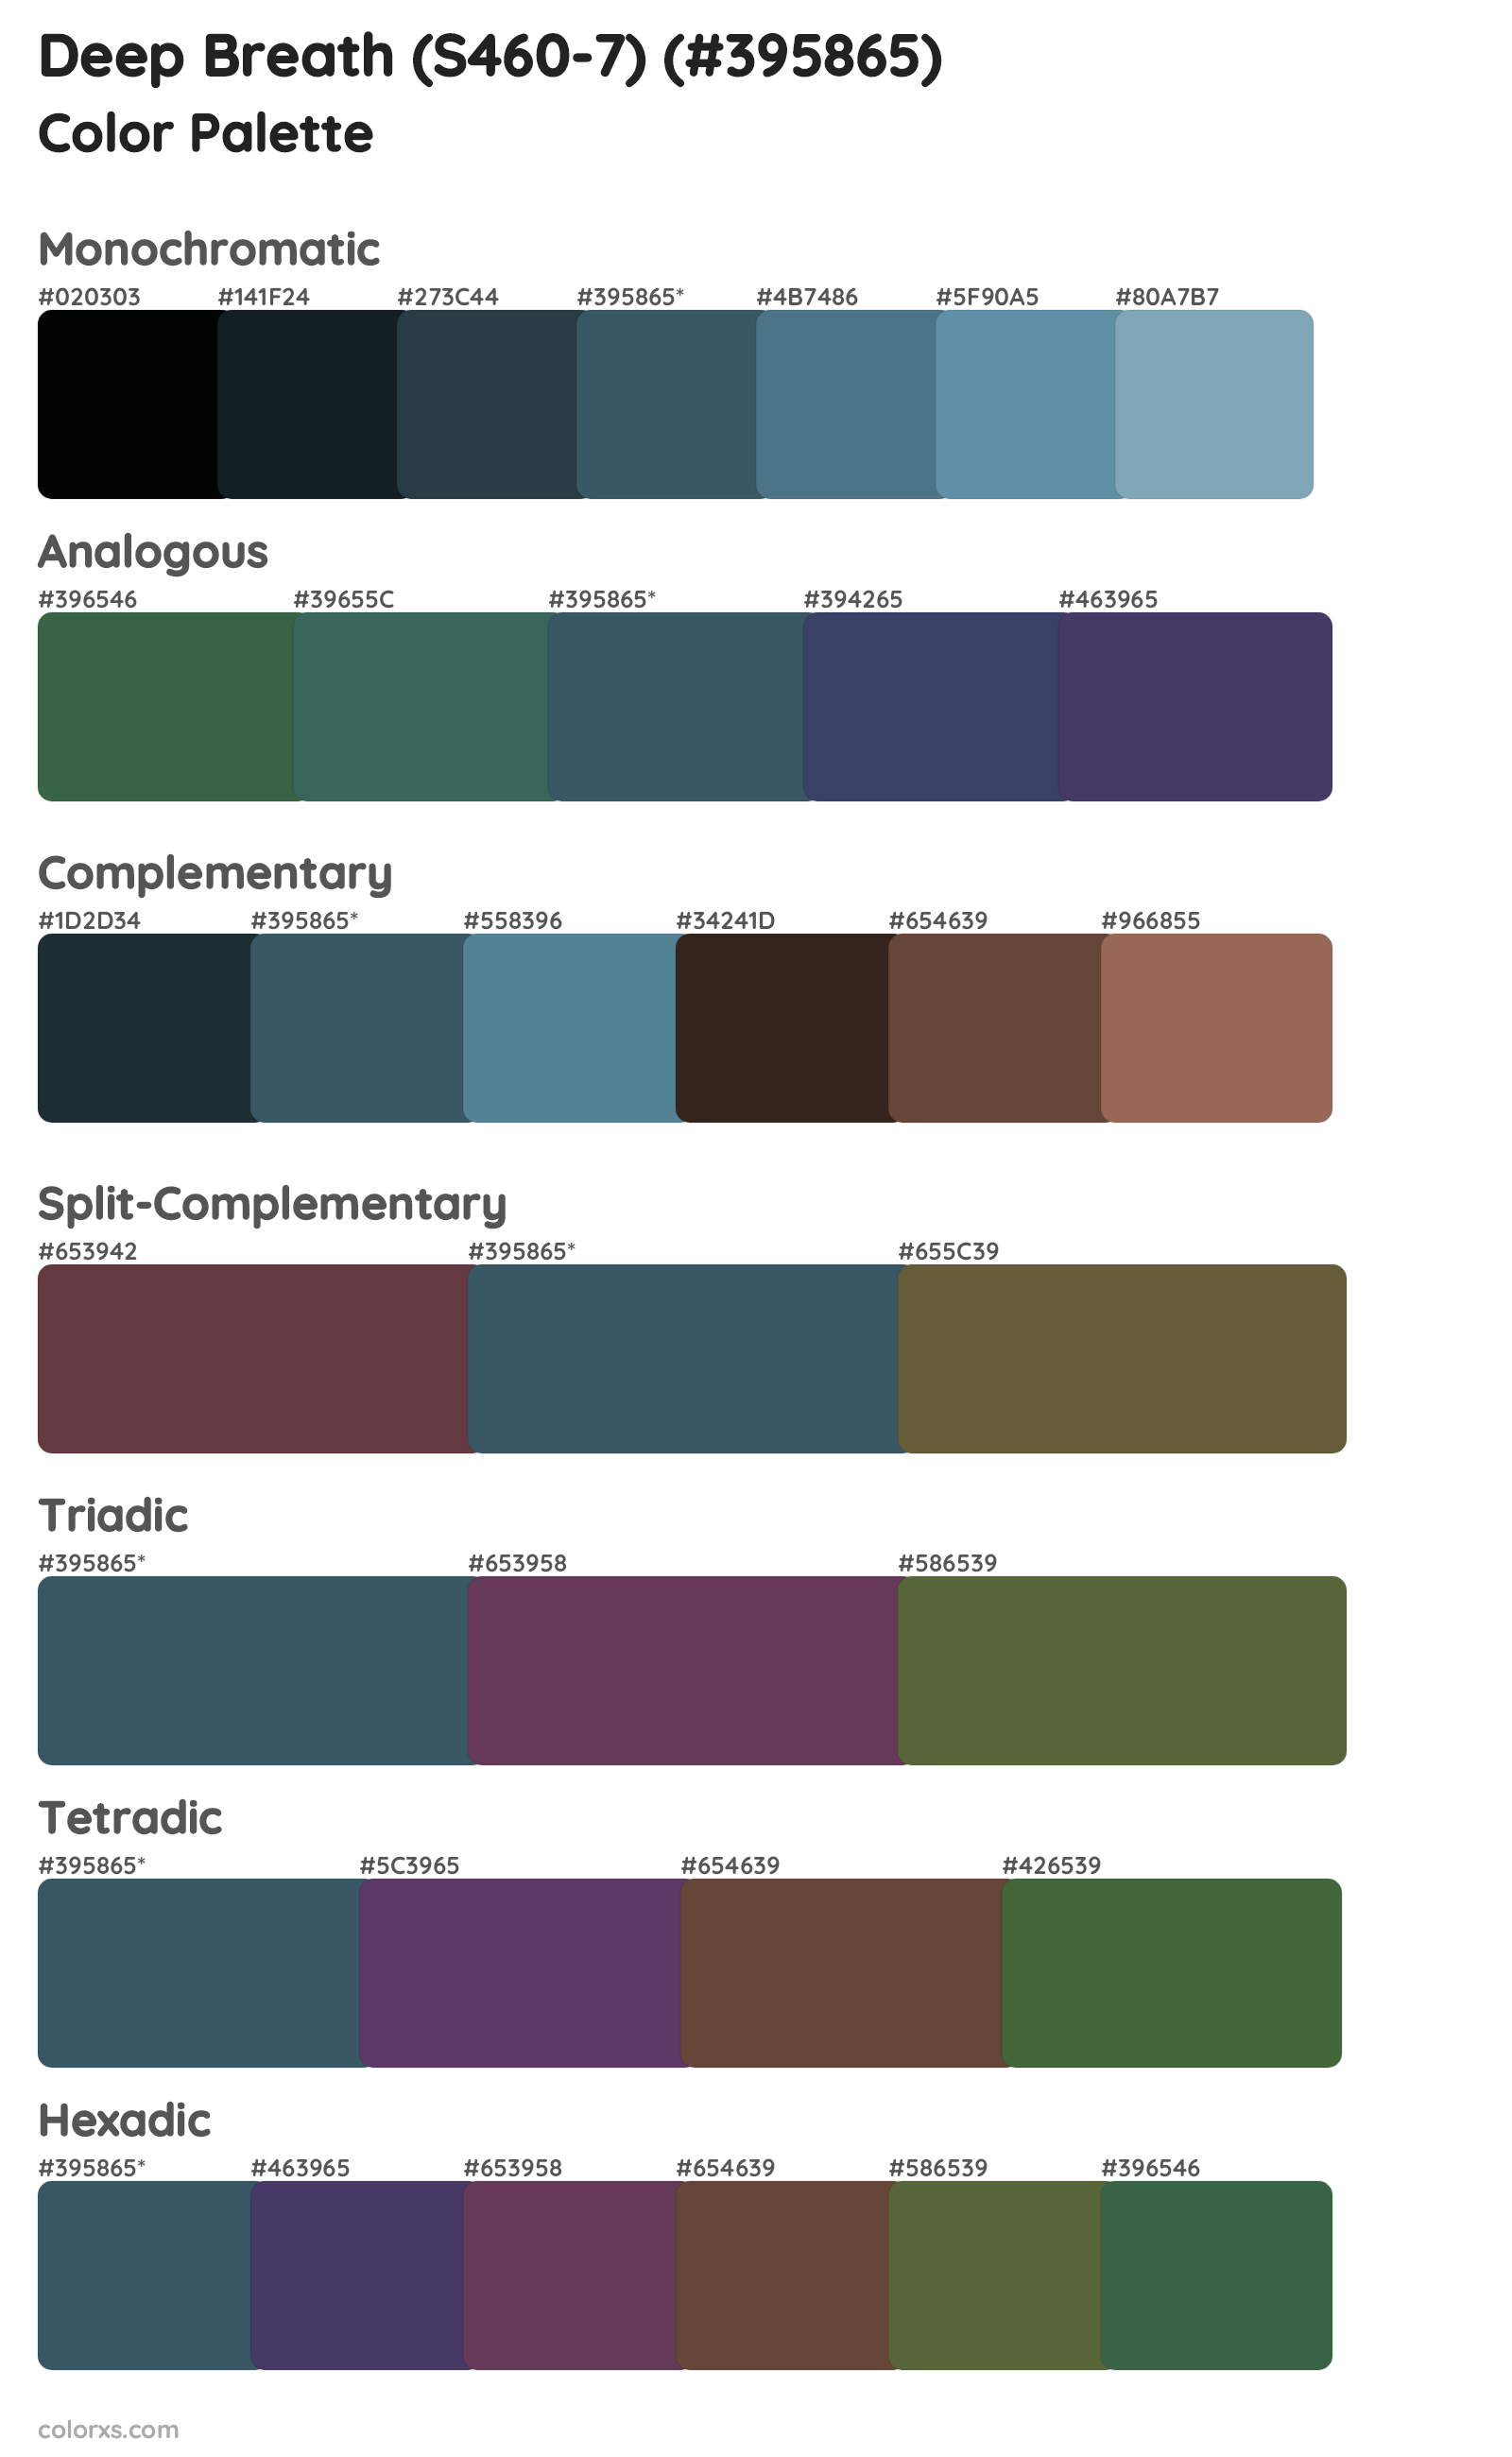 Deep Breath (S460-7) Color Scheme Palettes